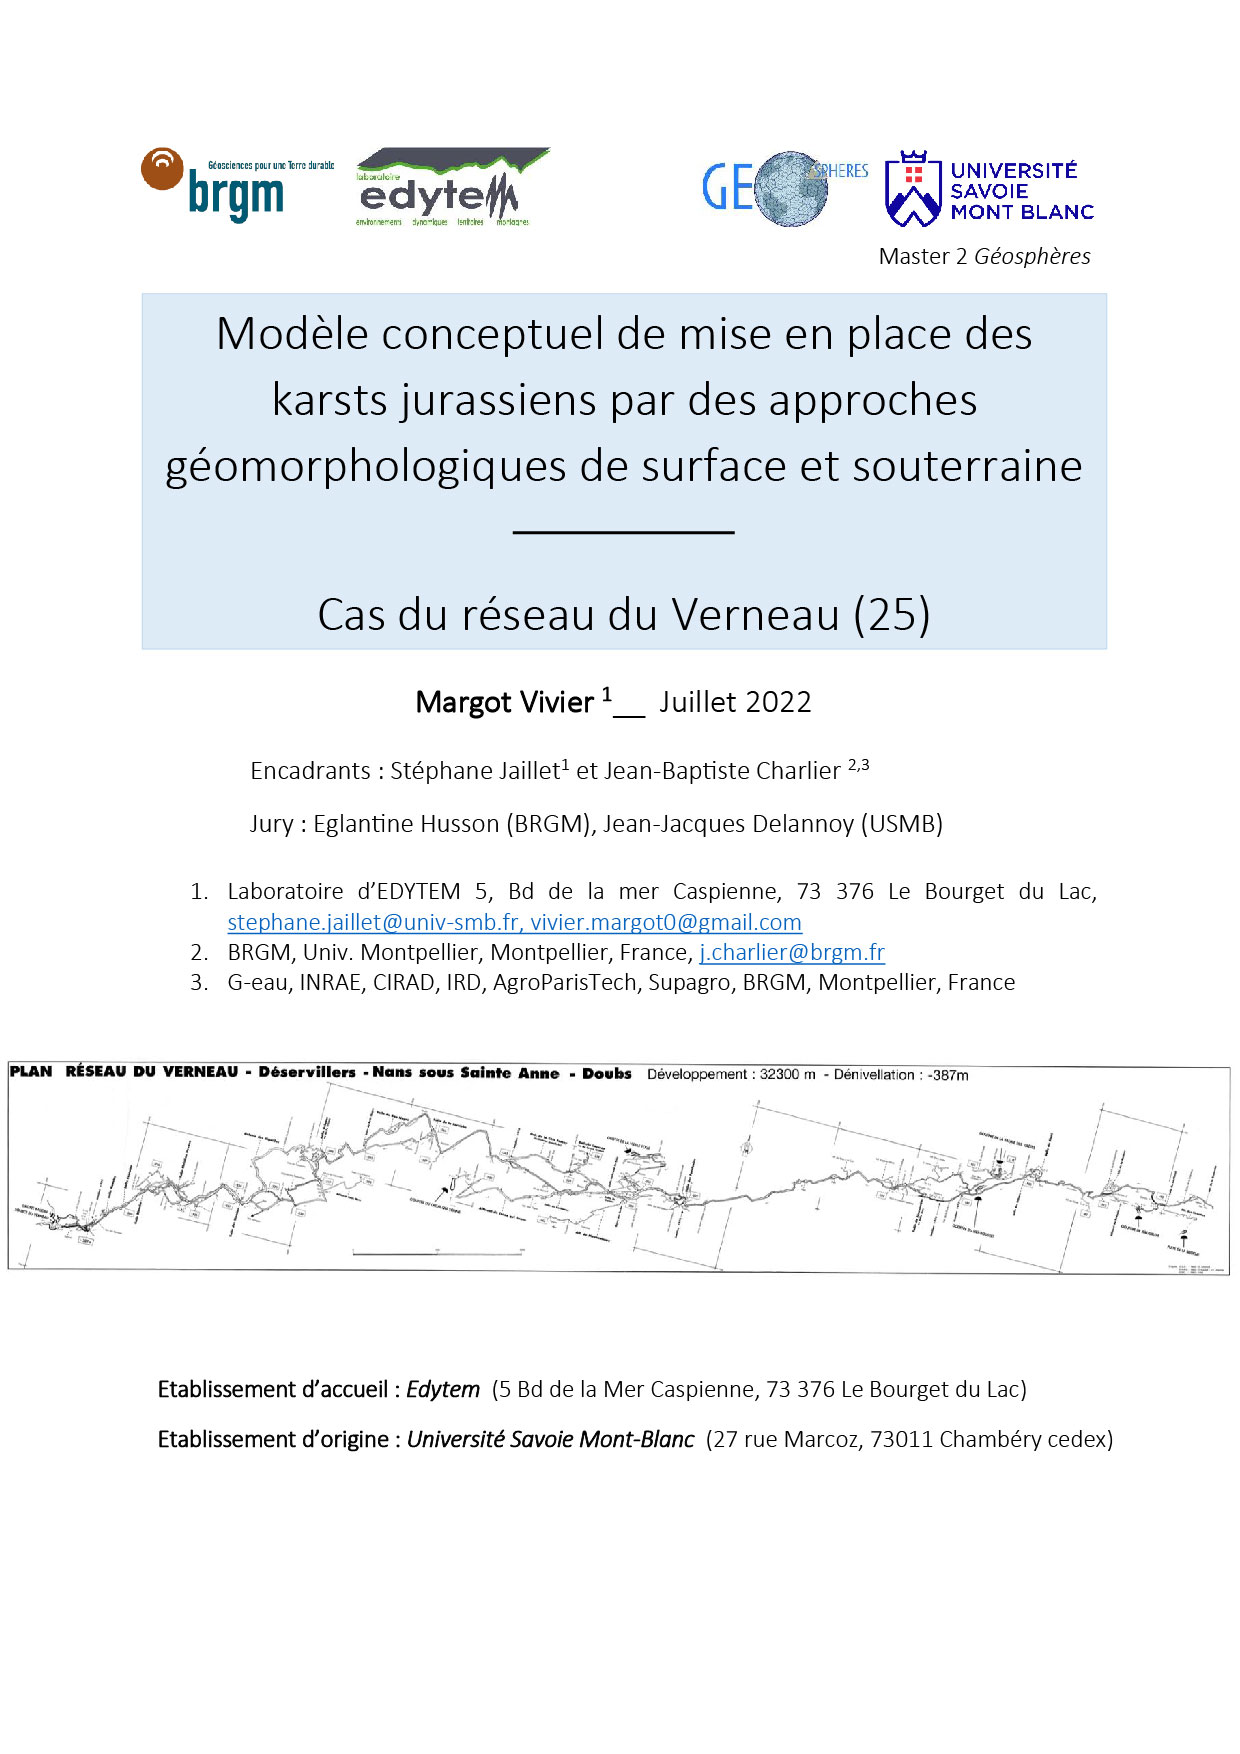 Mémoire de M2 de géographie réalisé au laboratoire Edytem (Université Savoie Mont-Blanc)